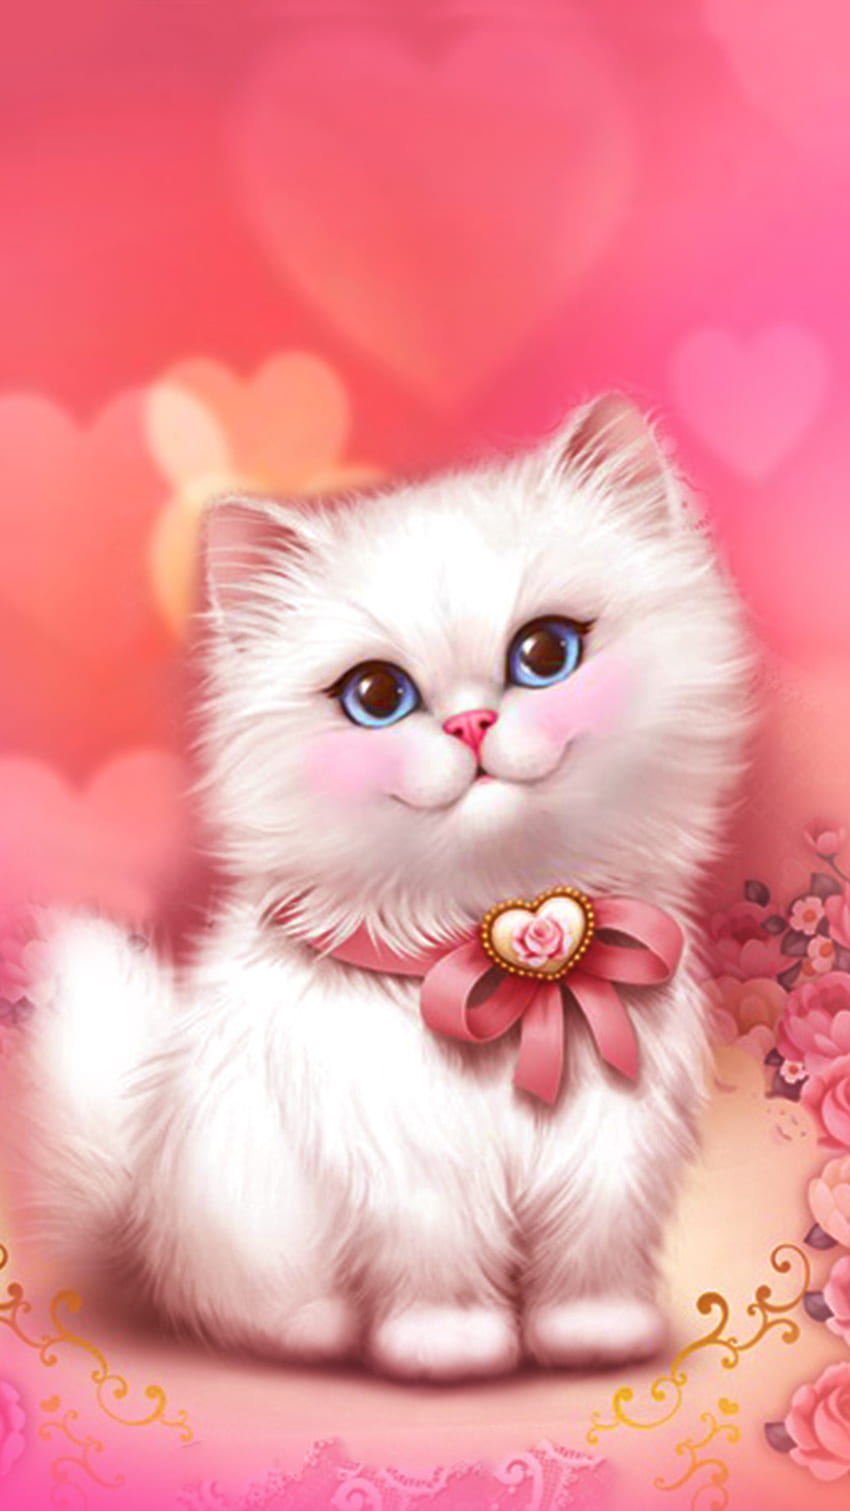 Nếu bạn là một người yêu thích mèo con, thì hình nền Cute Pink Cat là sự lựa chọn tuyệt vời cho bạn. Với hình ảnh đáng yêu và màu hồn hởi, bạn sẽ không thể rời mắt khỏi điện thoại của mình.